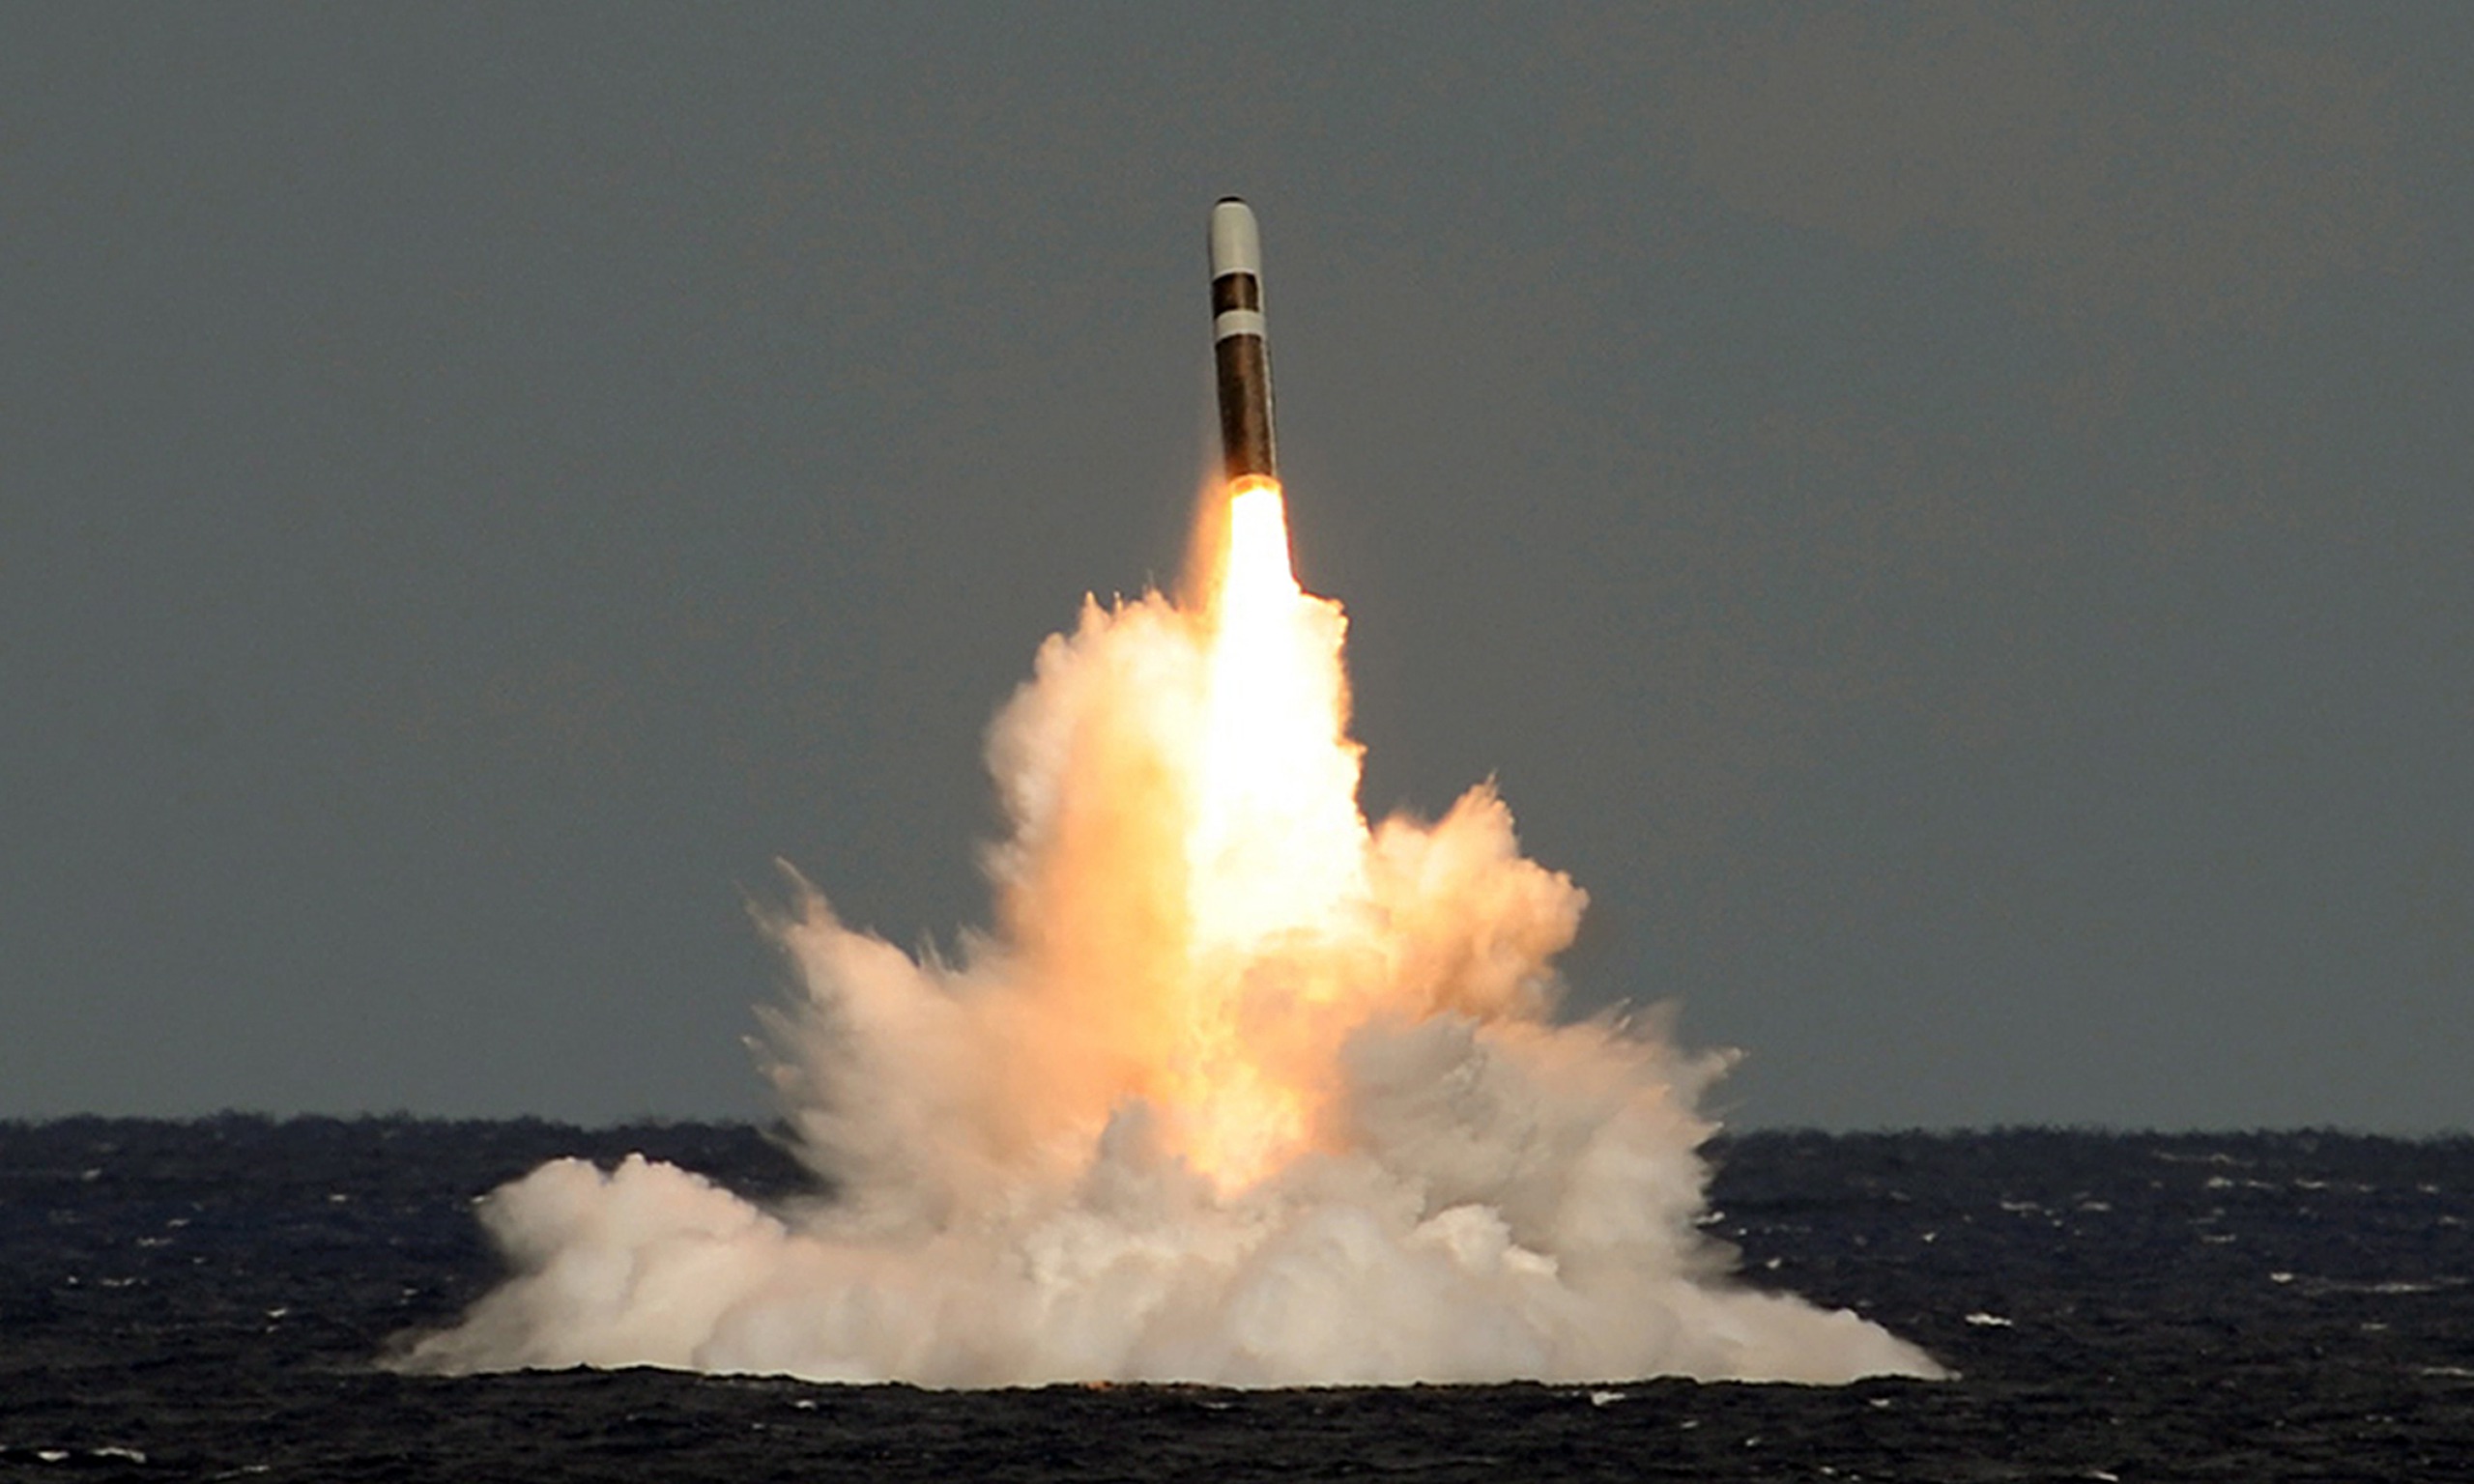 Trident II Missile - $53 billion